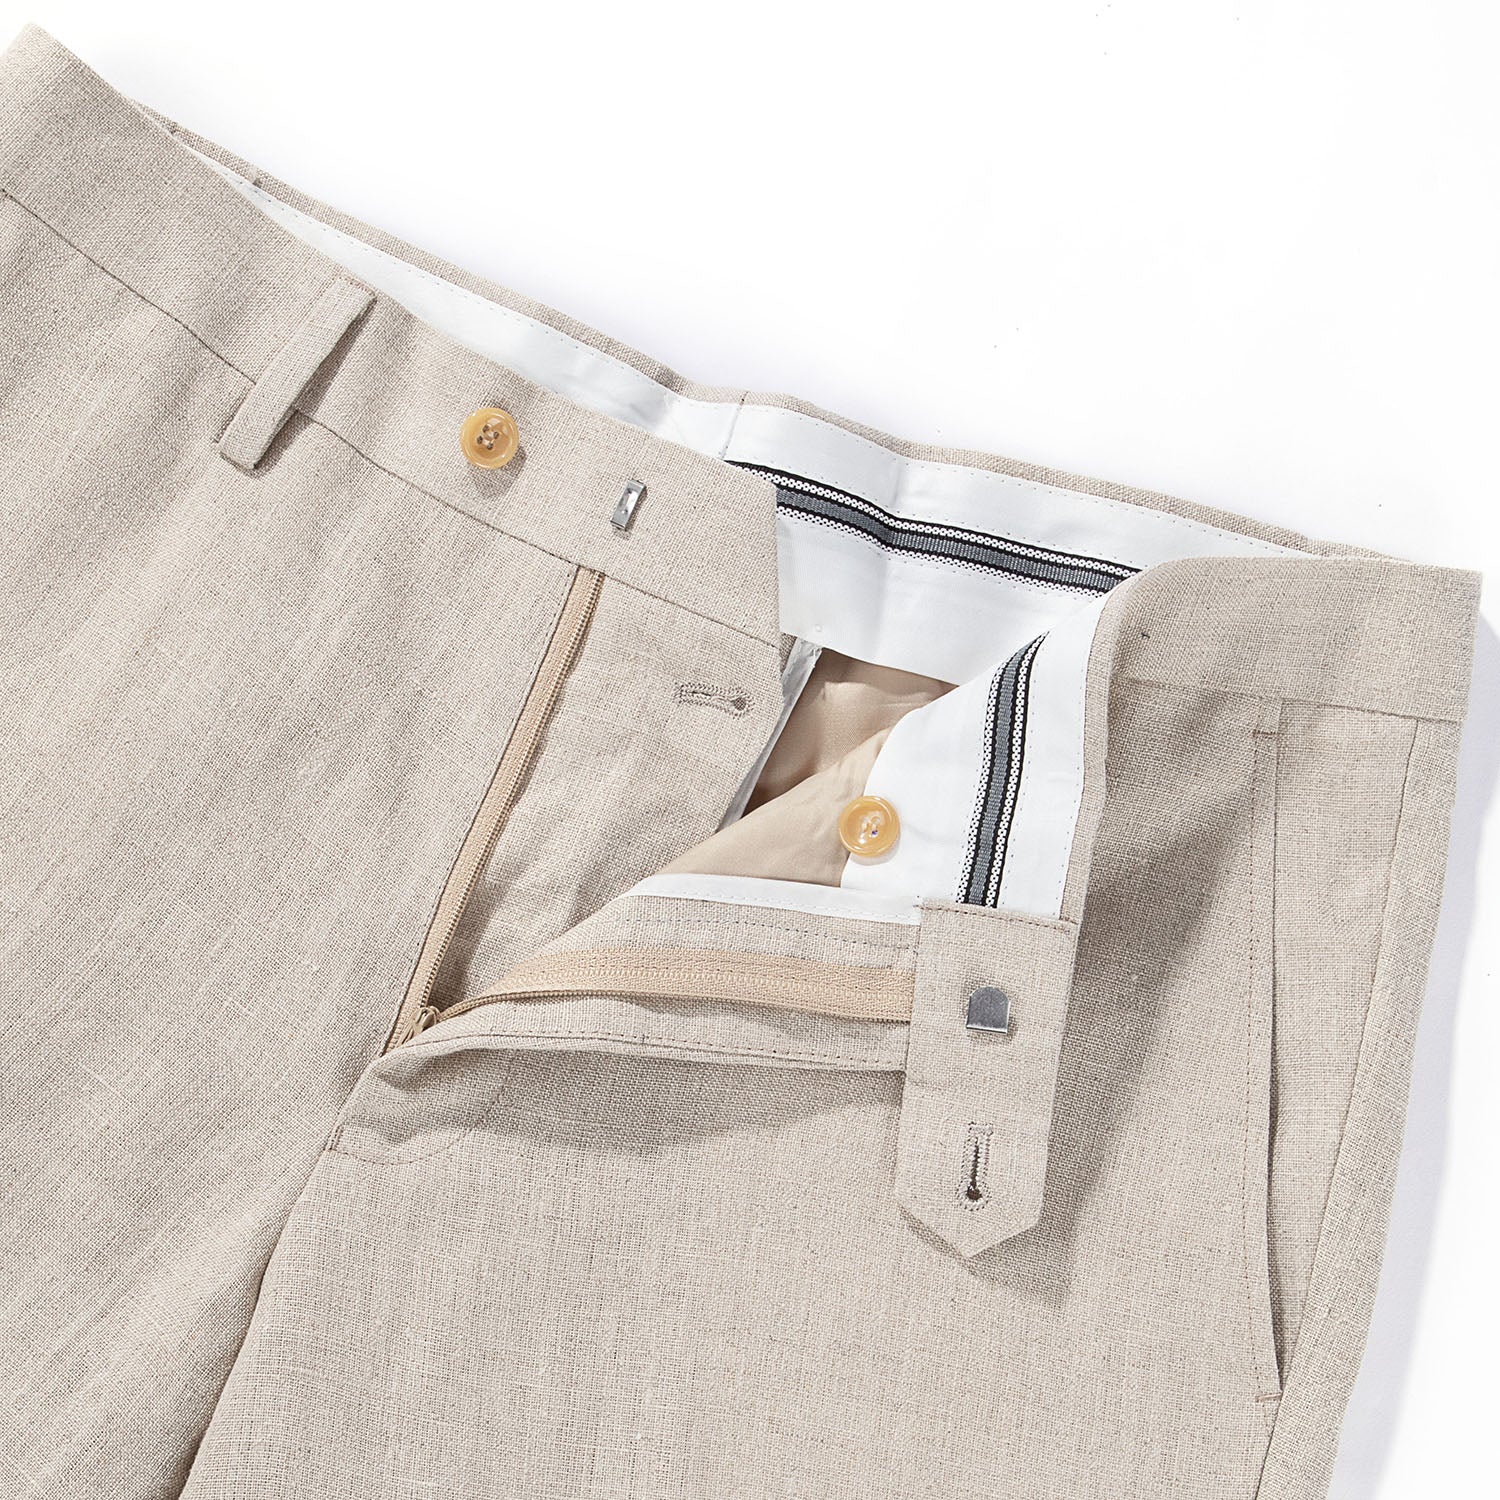 1PA1 Men's 100% Linen Khaki Jacket Trousers 2-Pieces Suit Set